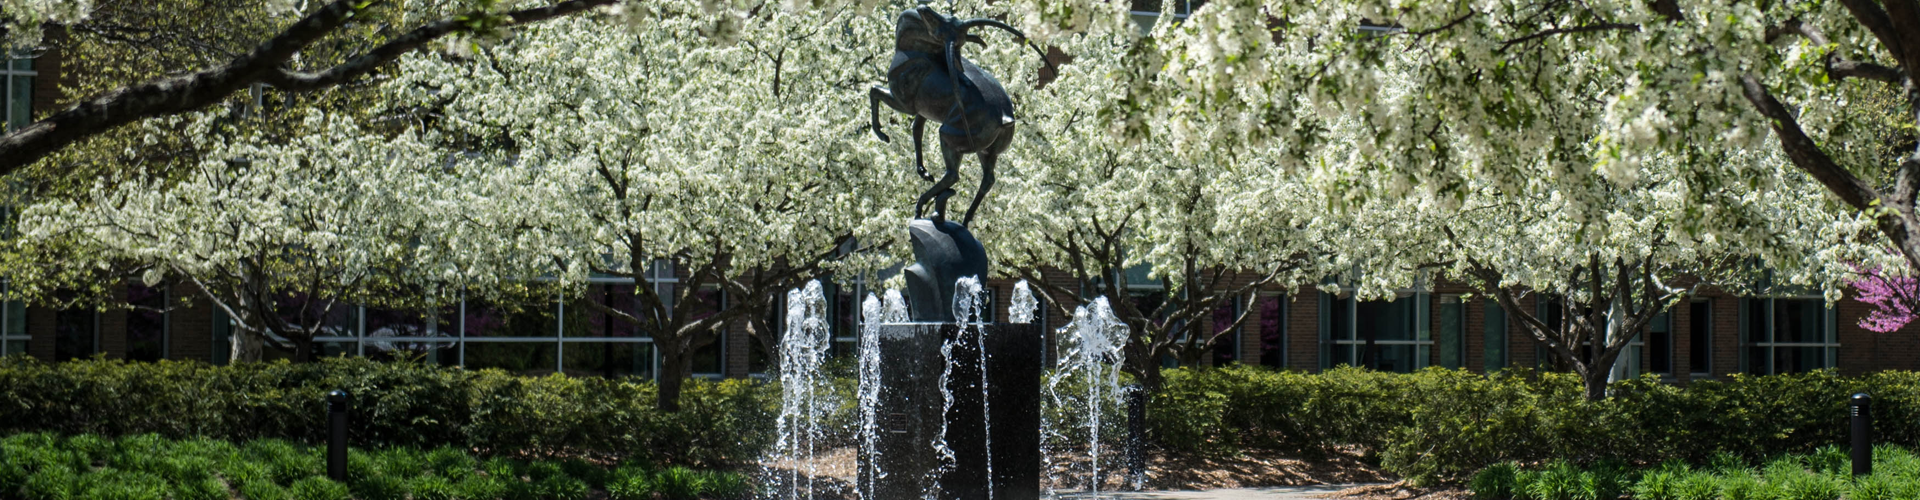 跳羚喷泉在春天与开花的树木的图像